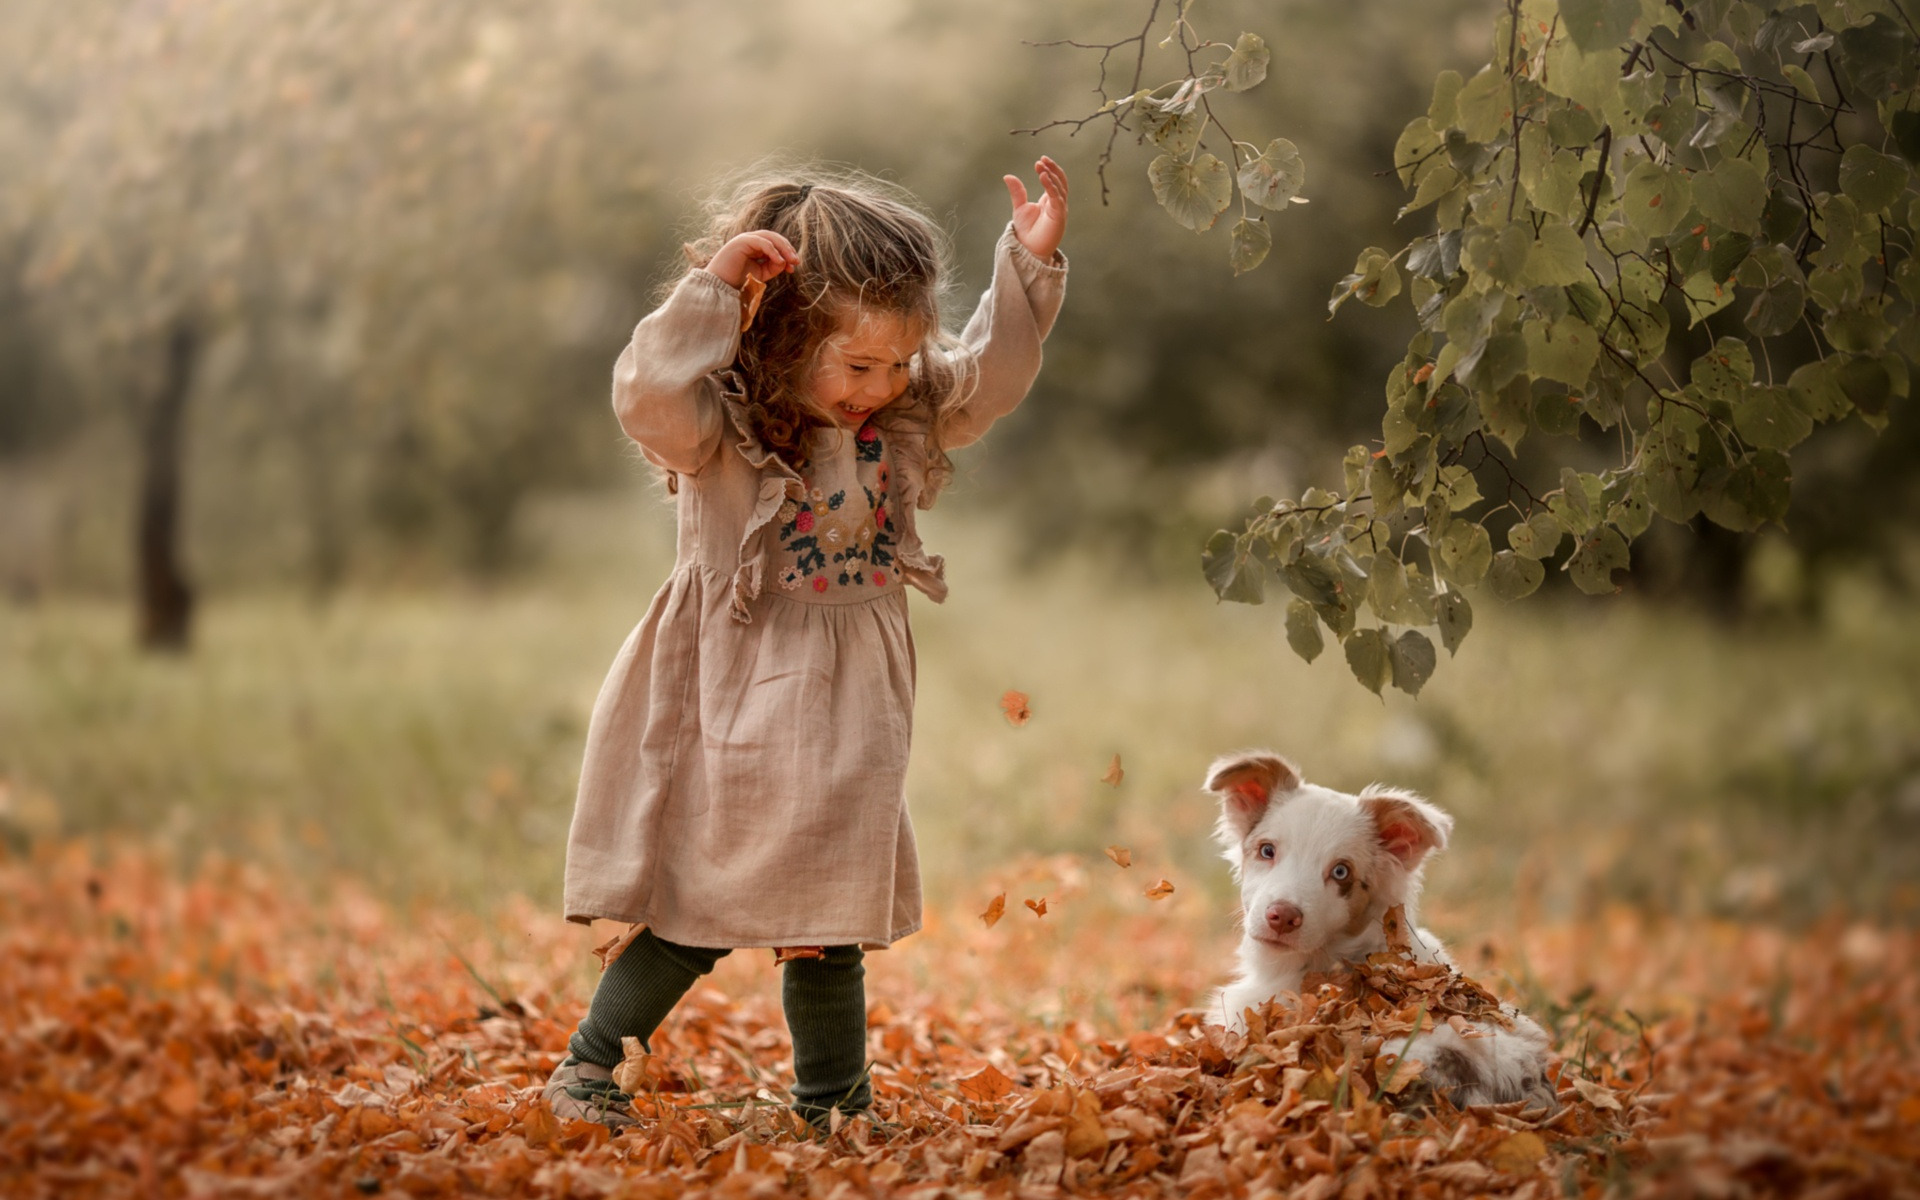 Гуляла девочка в лесу. Осень дети радость. Счастье радость дети и животные. Дети и природа. Дети осень радость животные.